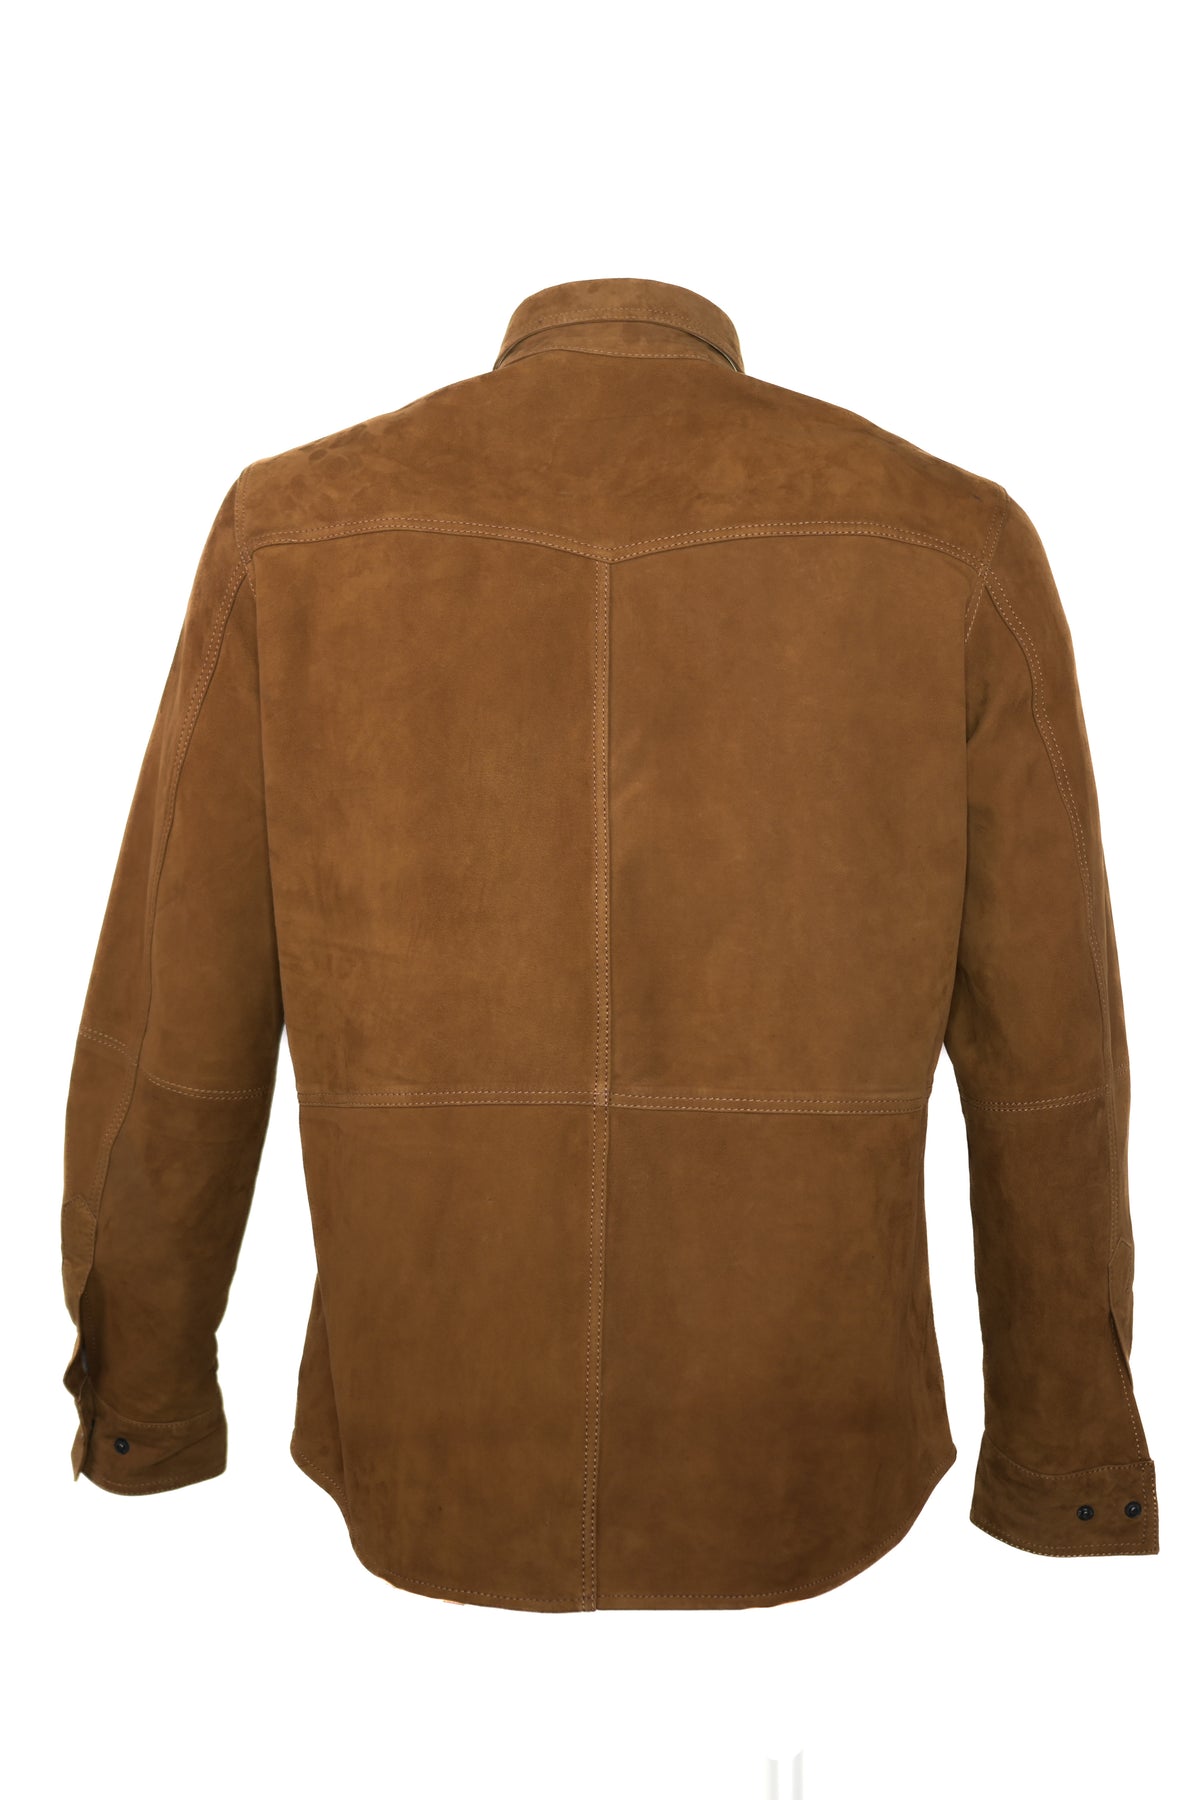 Regency Gem Suede Leather Shirt Jacket